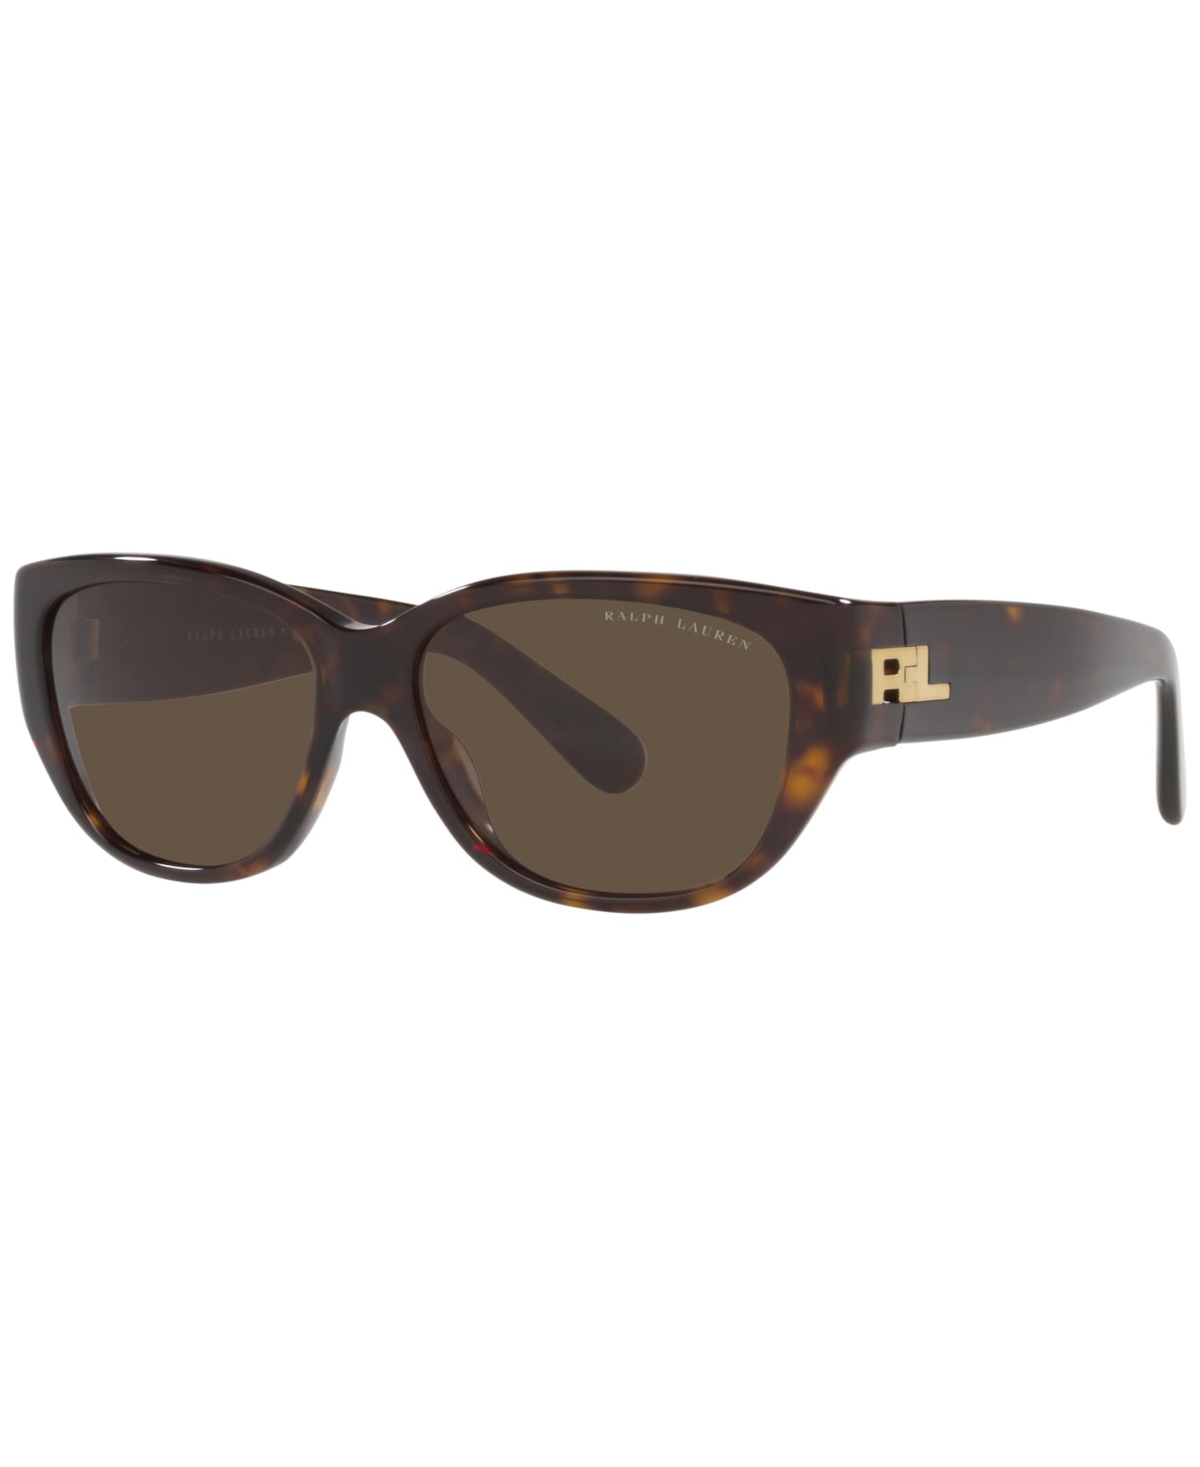 Ralph Lauren Women's Sunglasses, Rl8193 56 In Shiny Dark Havana